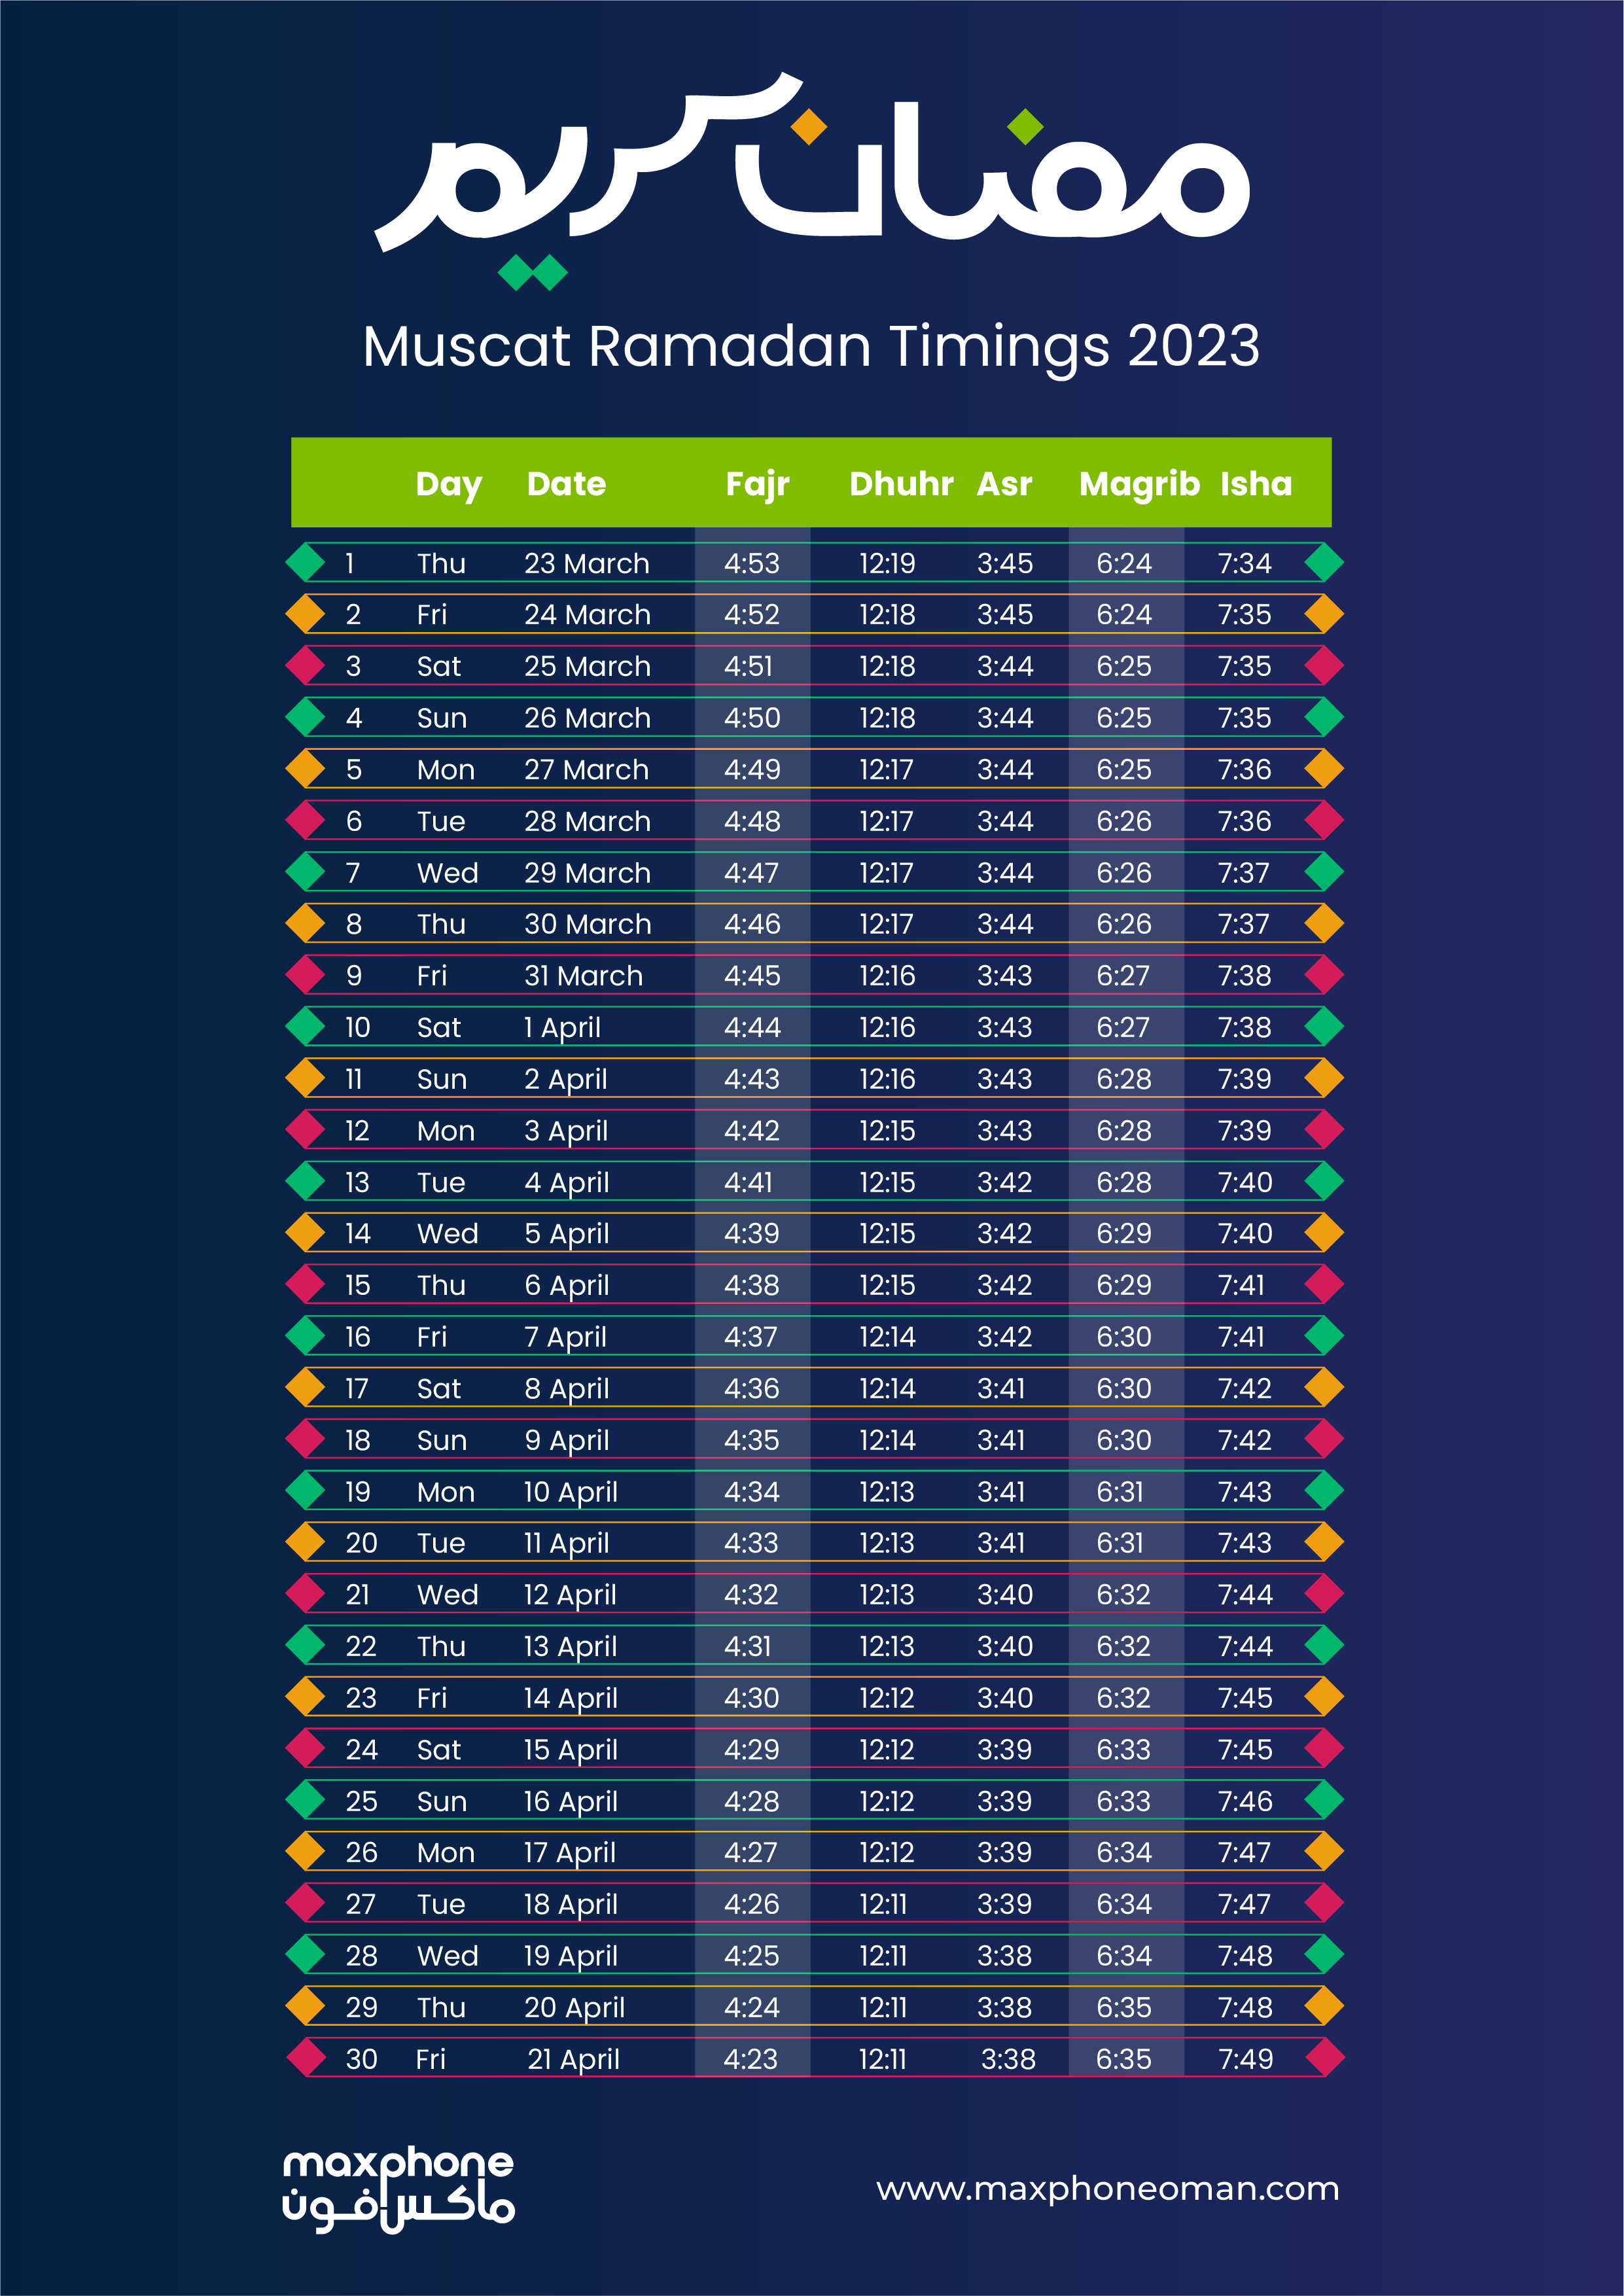 Muscat ramadan timing 2023